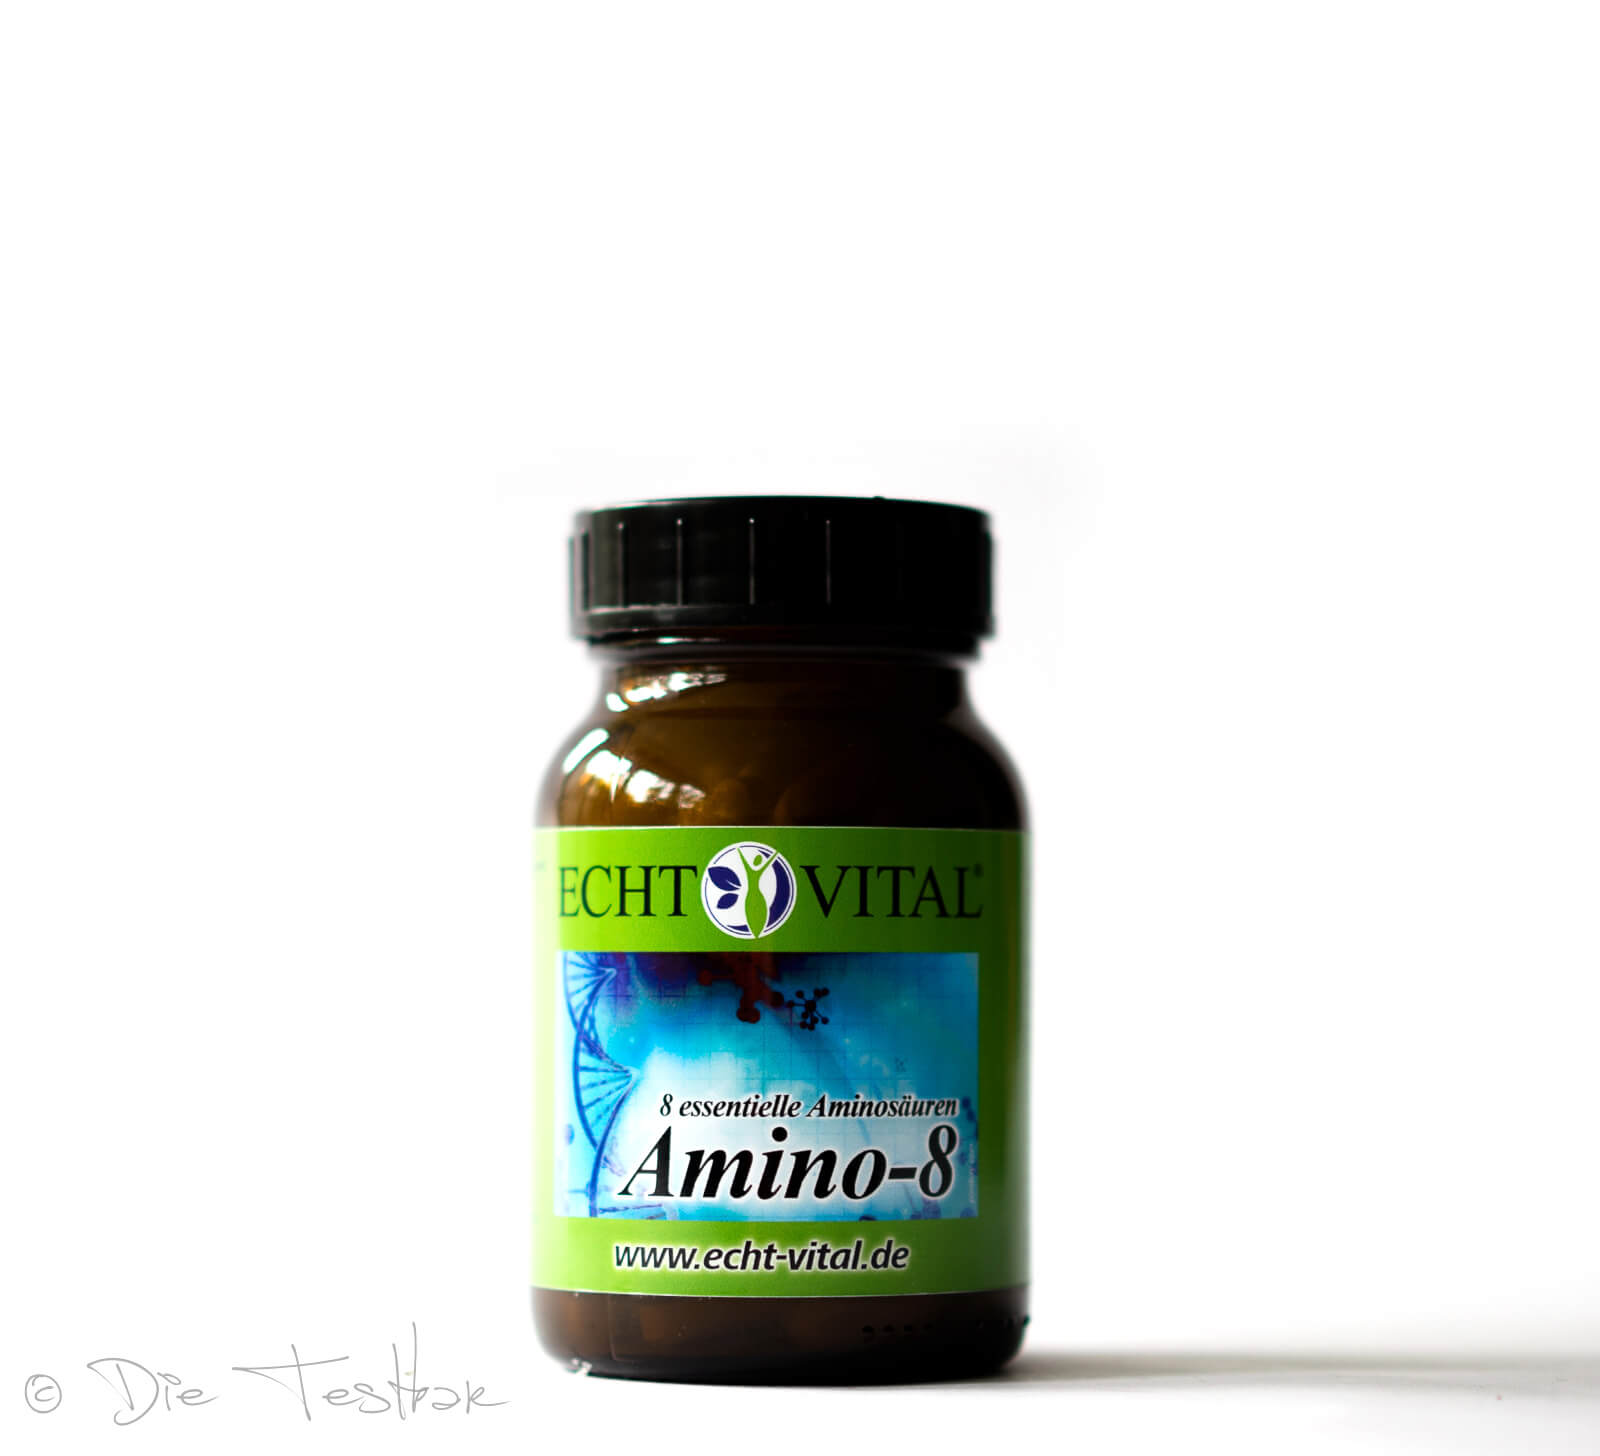 ECHT VITAL Amino-8 - alle essentiellen Aminosäuren (EAA) in einer Tablette